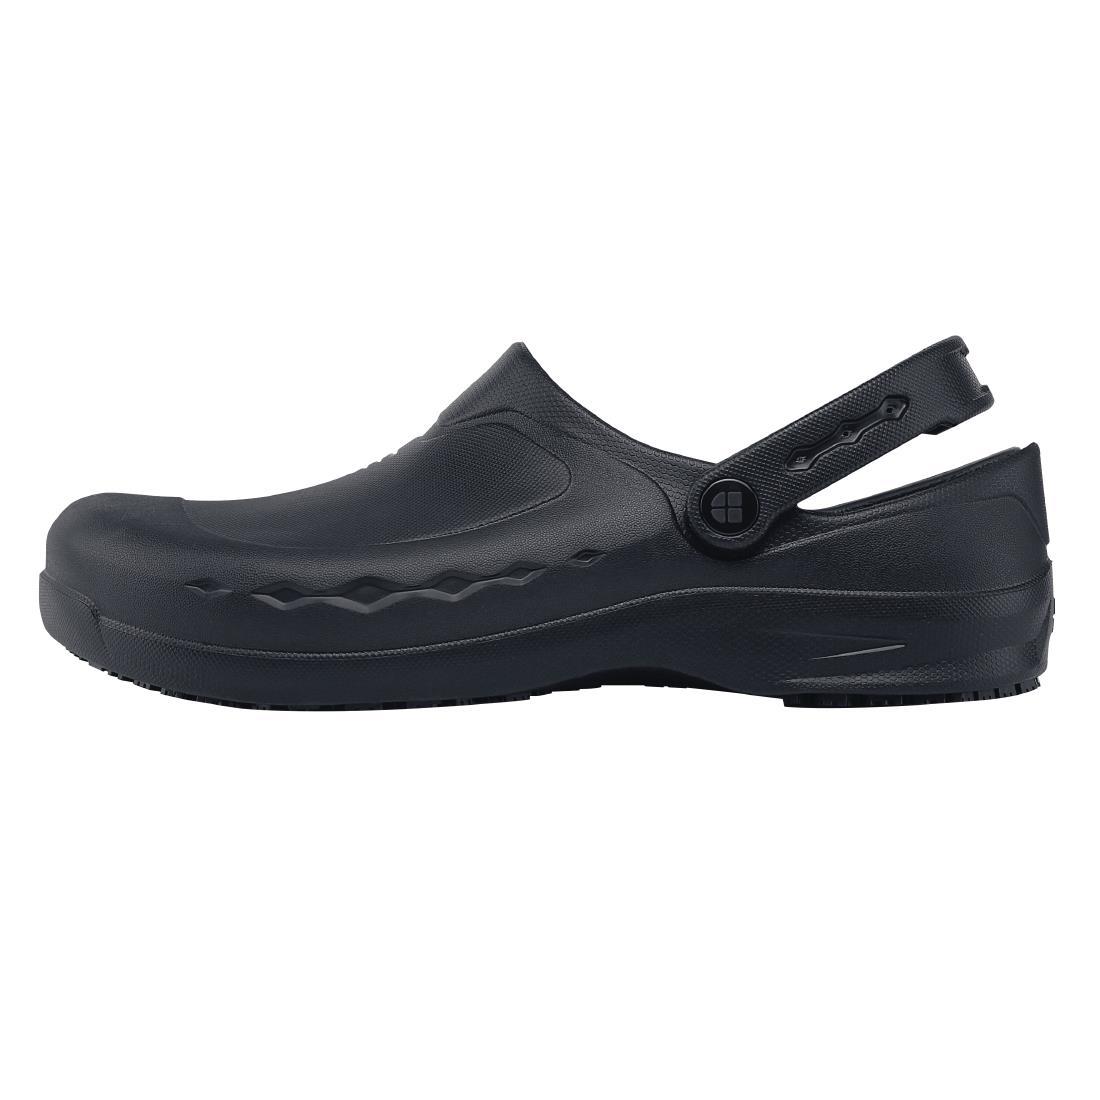 Shoes for Crews Zinc Clogs Black Size 39 - BB569-39  - 1